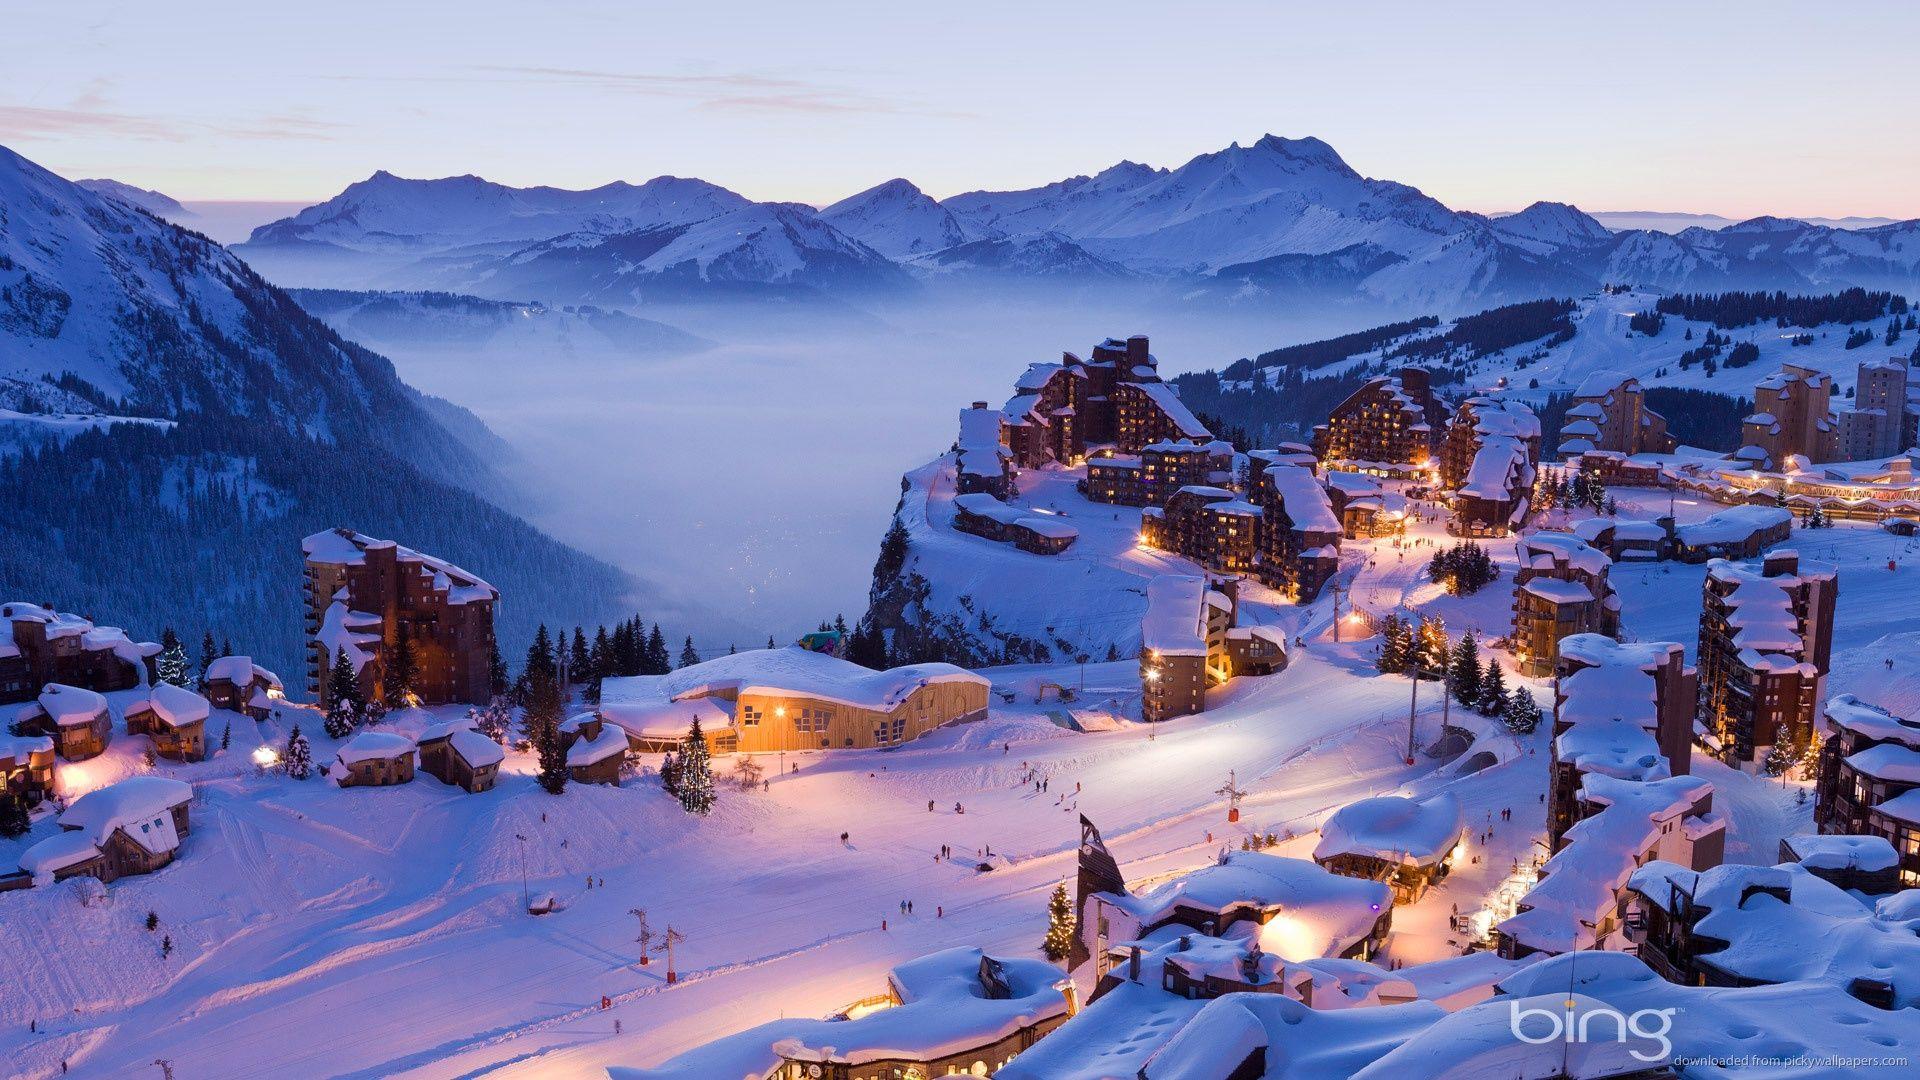 bing winter image. Bing Winter Village (1920x1080). Winter Image